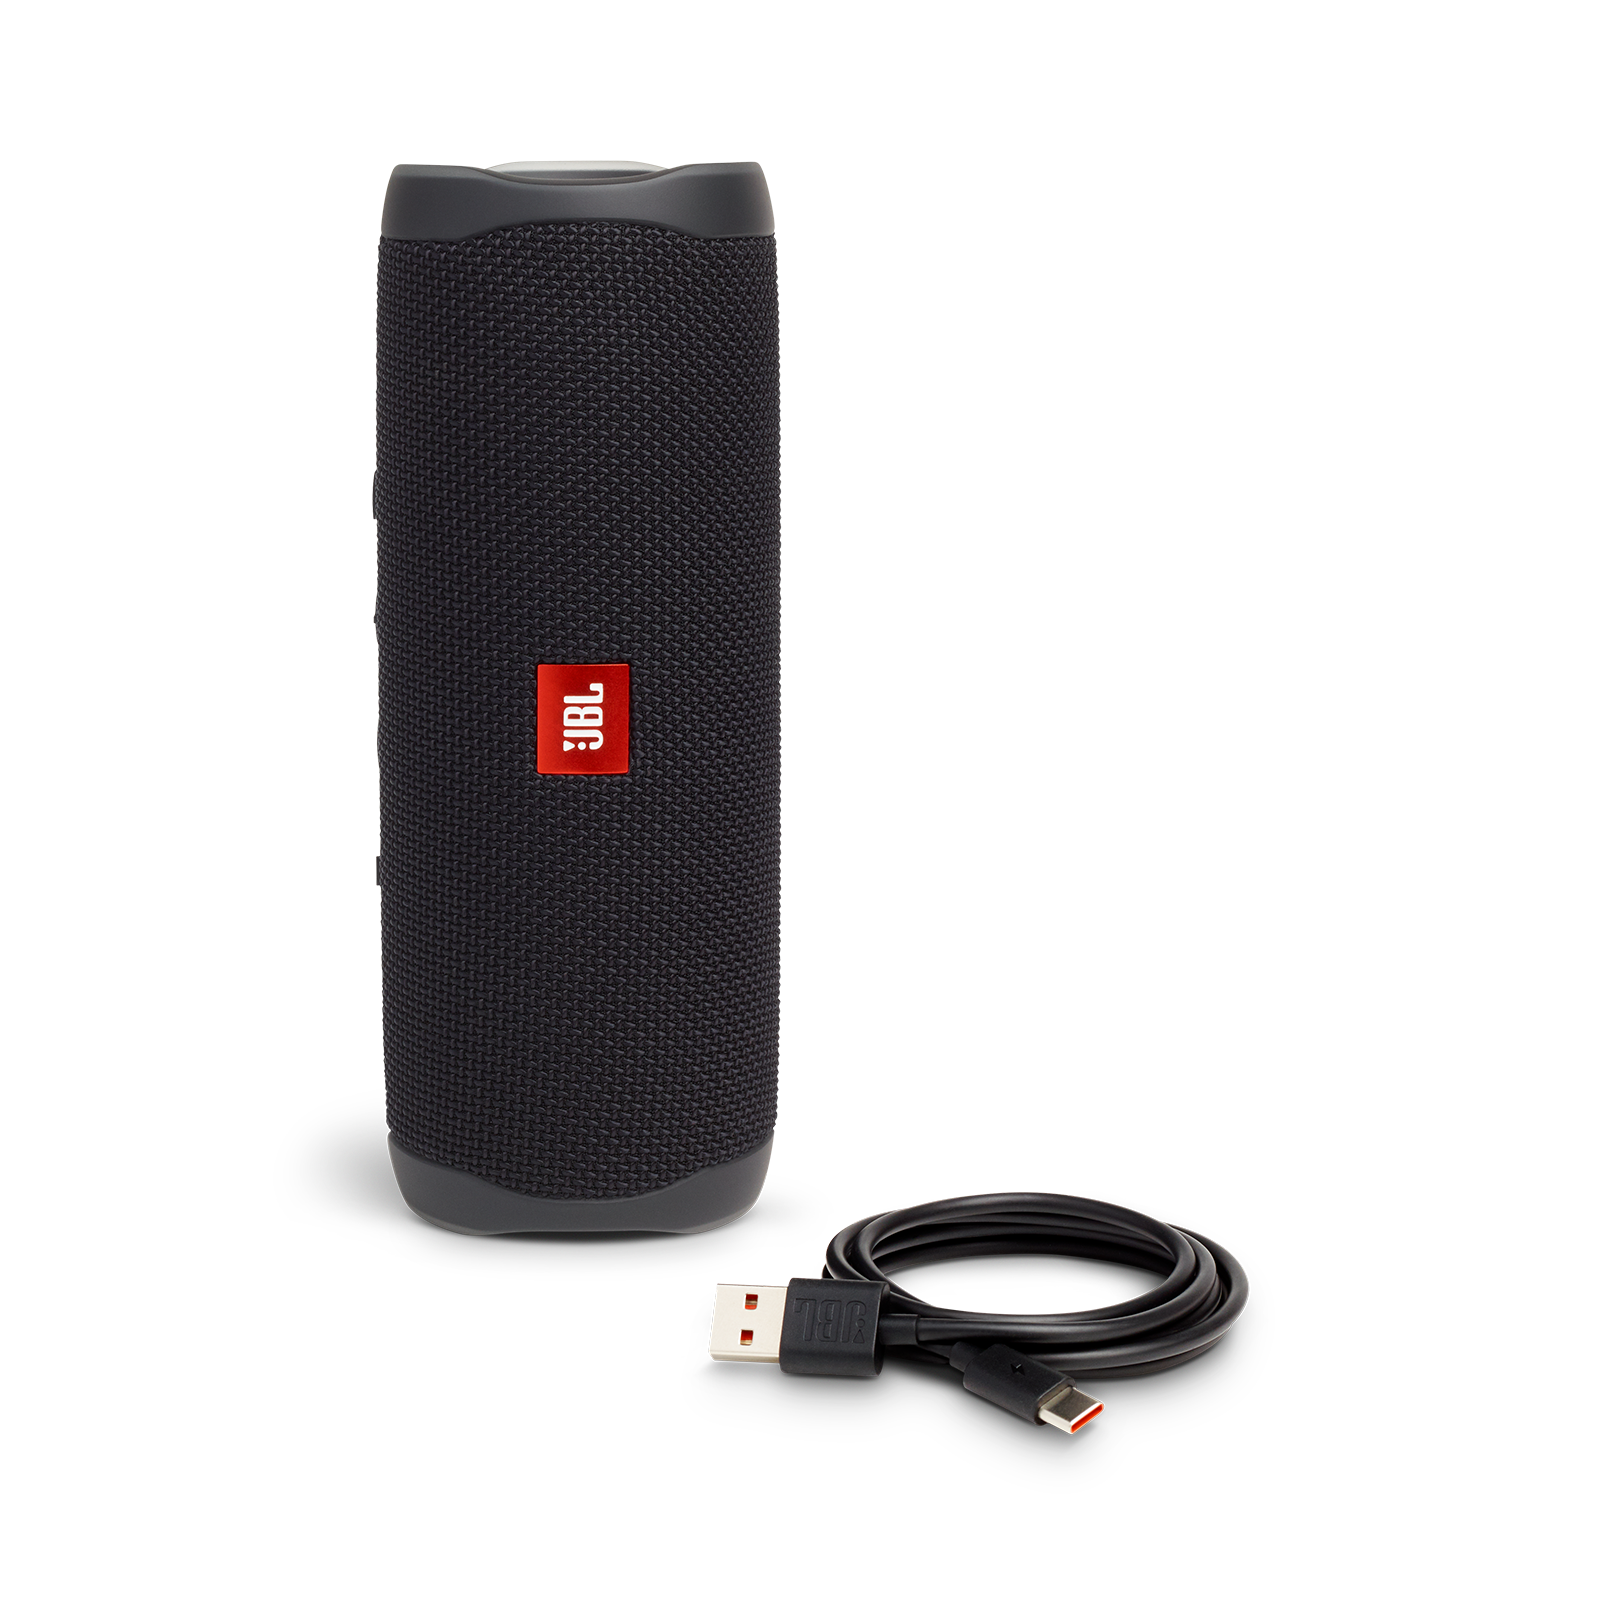 Flip 5 Portable Speaker